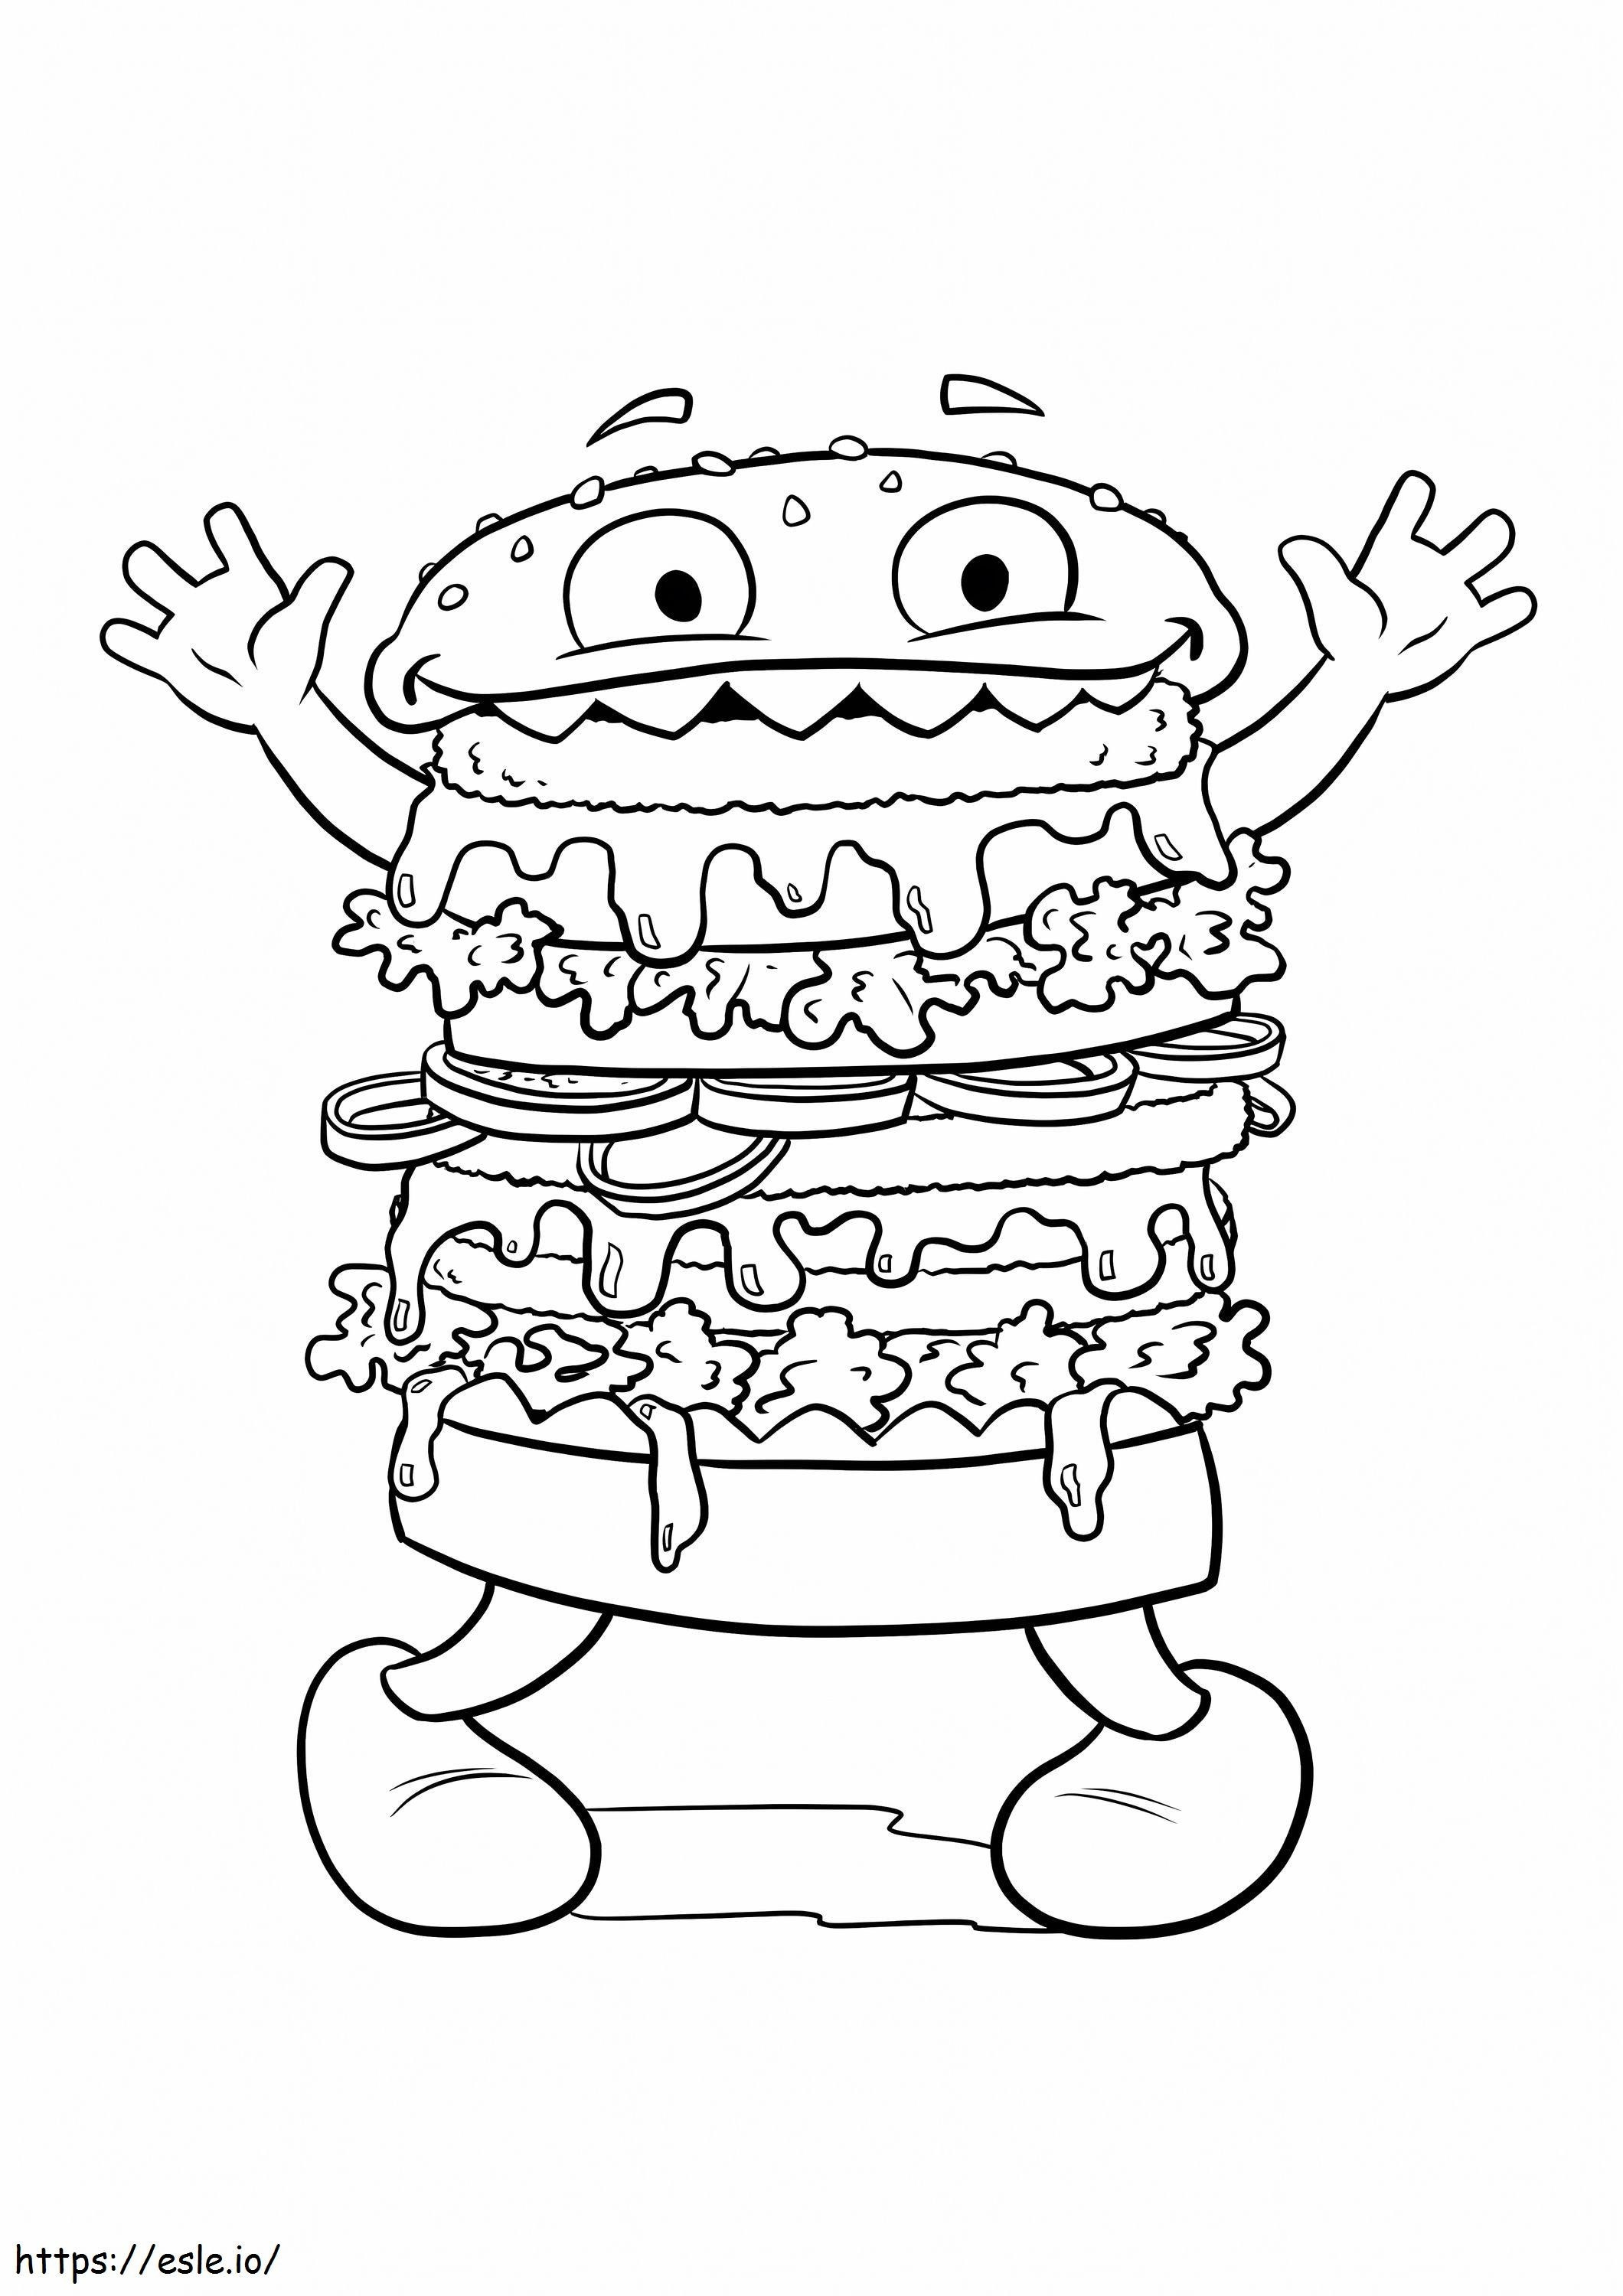 Het gekke Hamburgermonster kleurplaat kleurplaat